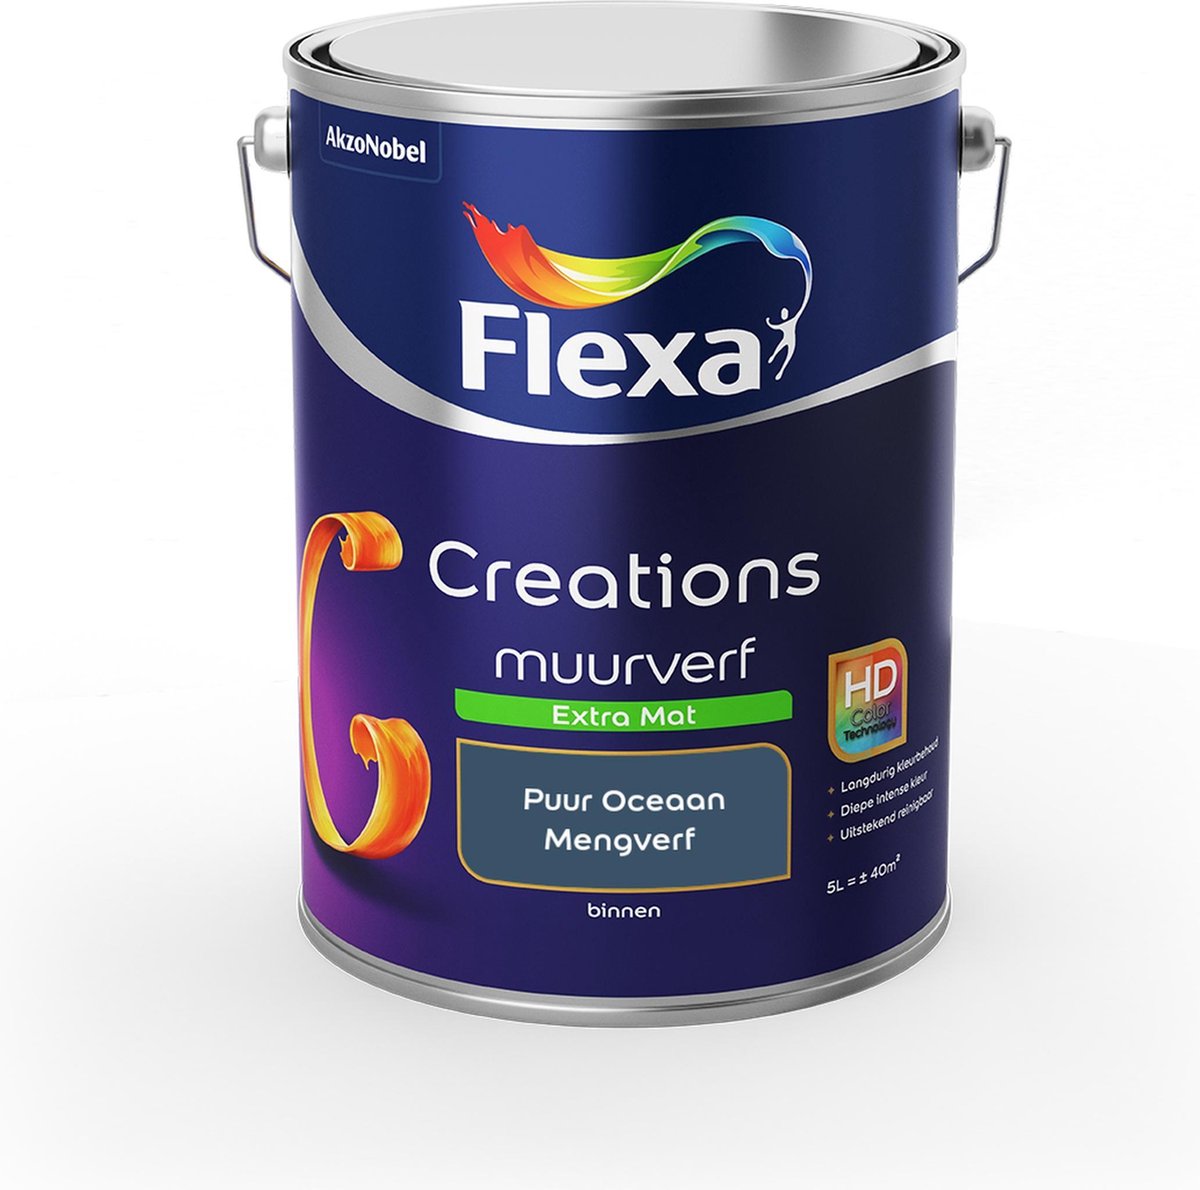 Flexa Creations - Muurverf Extra Mat - Puur Oceaan - Mengkleuren Collectie- 5 Liter